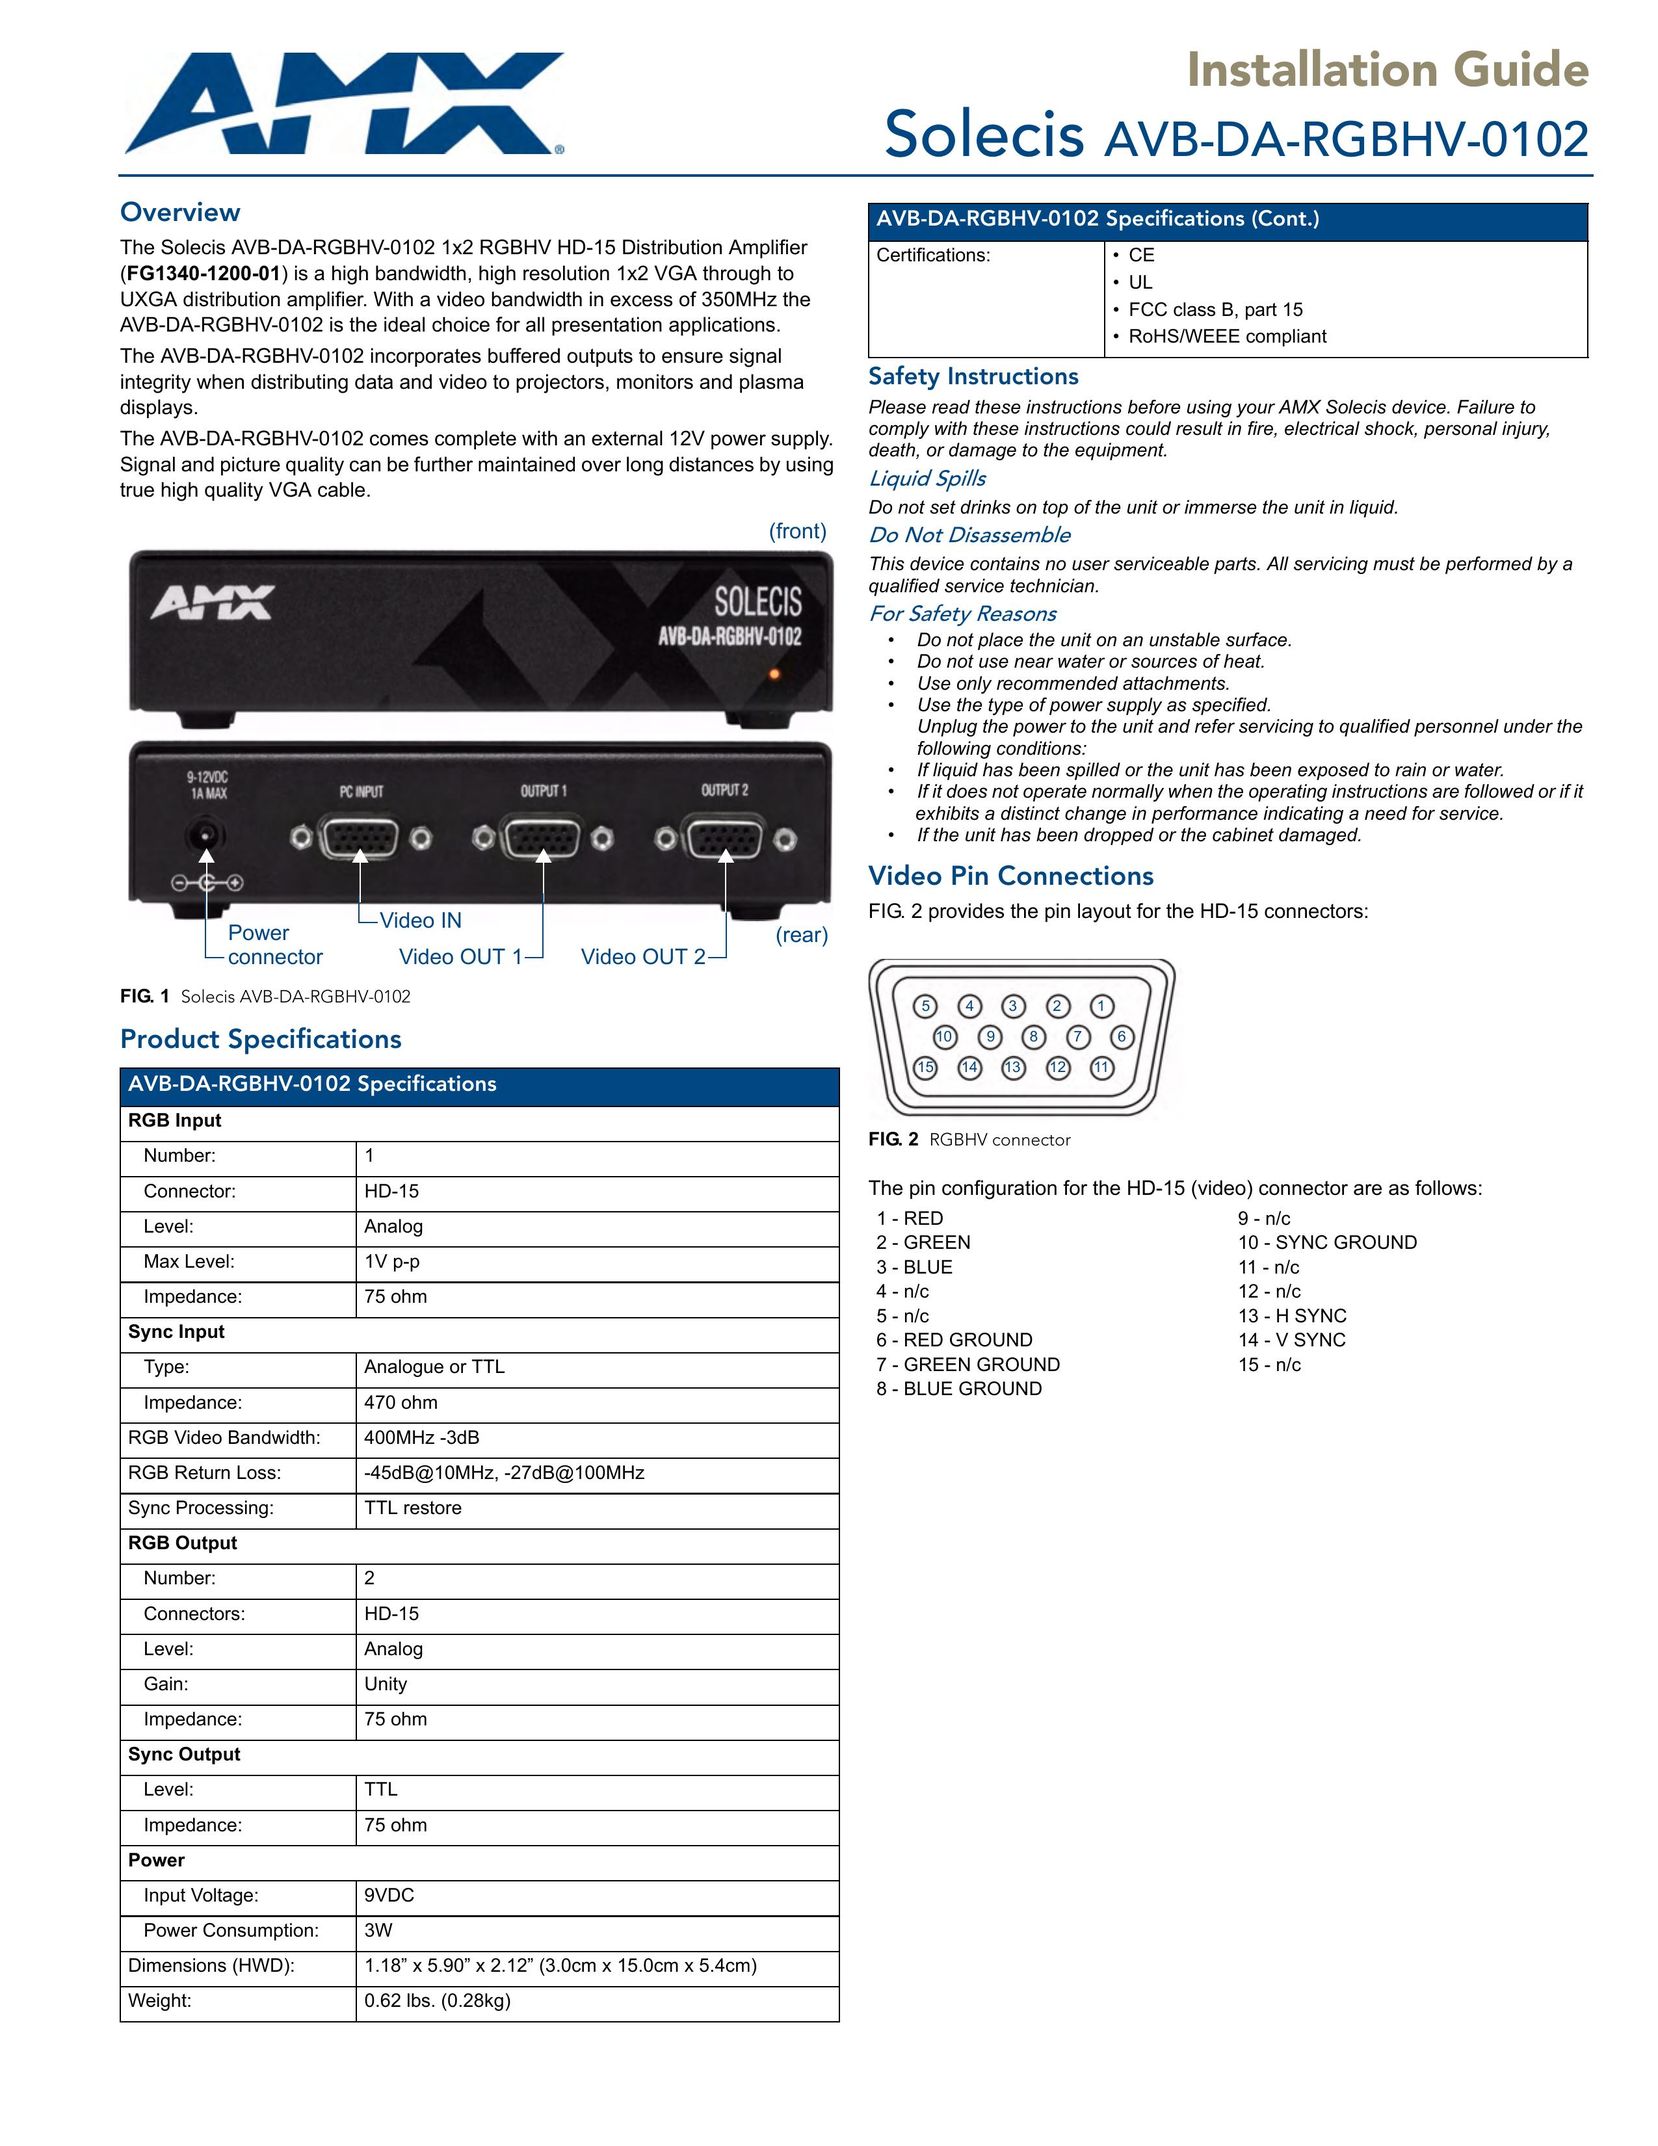 AMX AVB-DA-RGBHV-0102 Stereo Amplifier User Manual